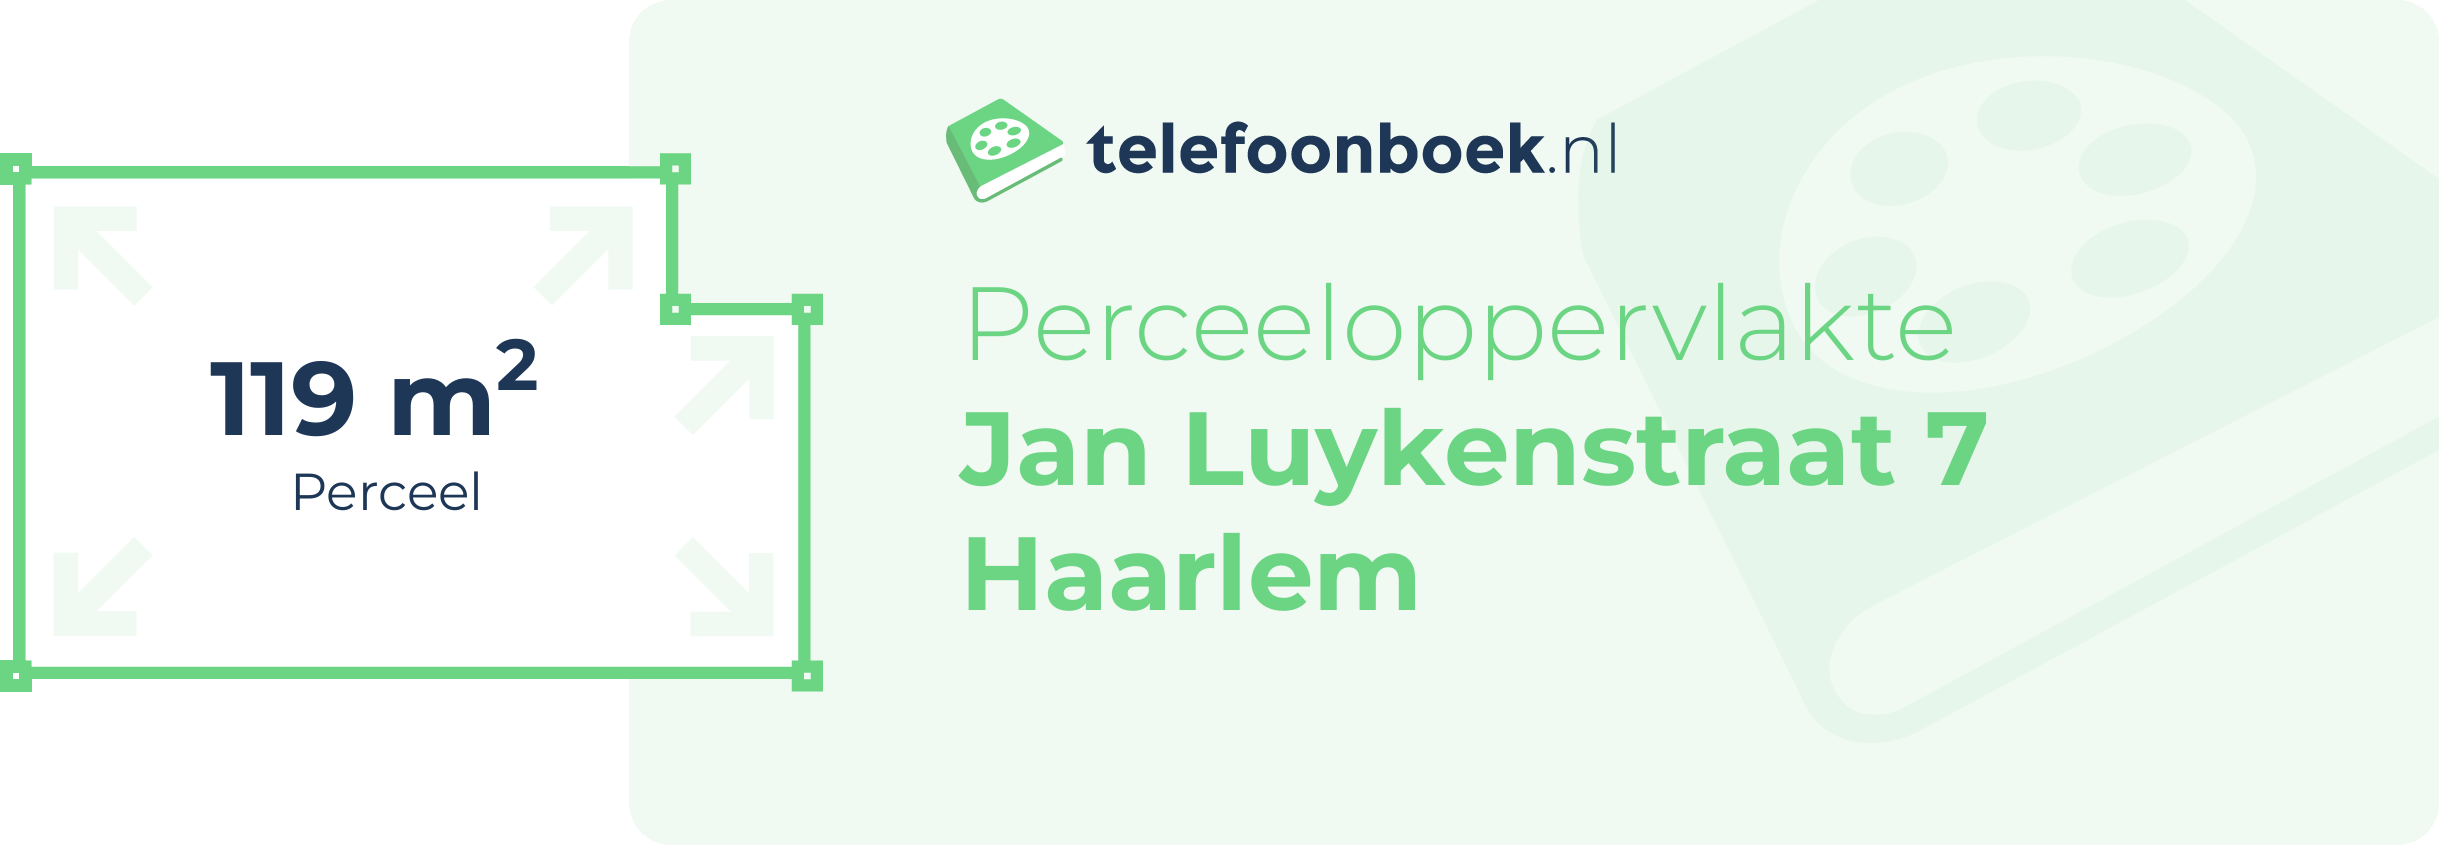 Perceeloppervlakte Jan Luykenstraat 7 Haarlem